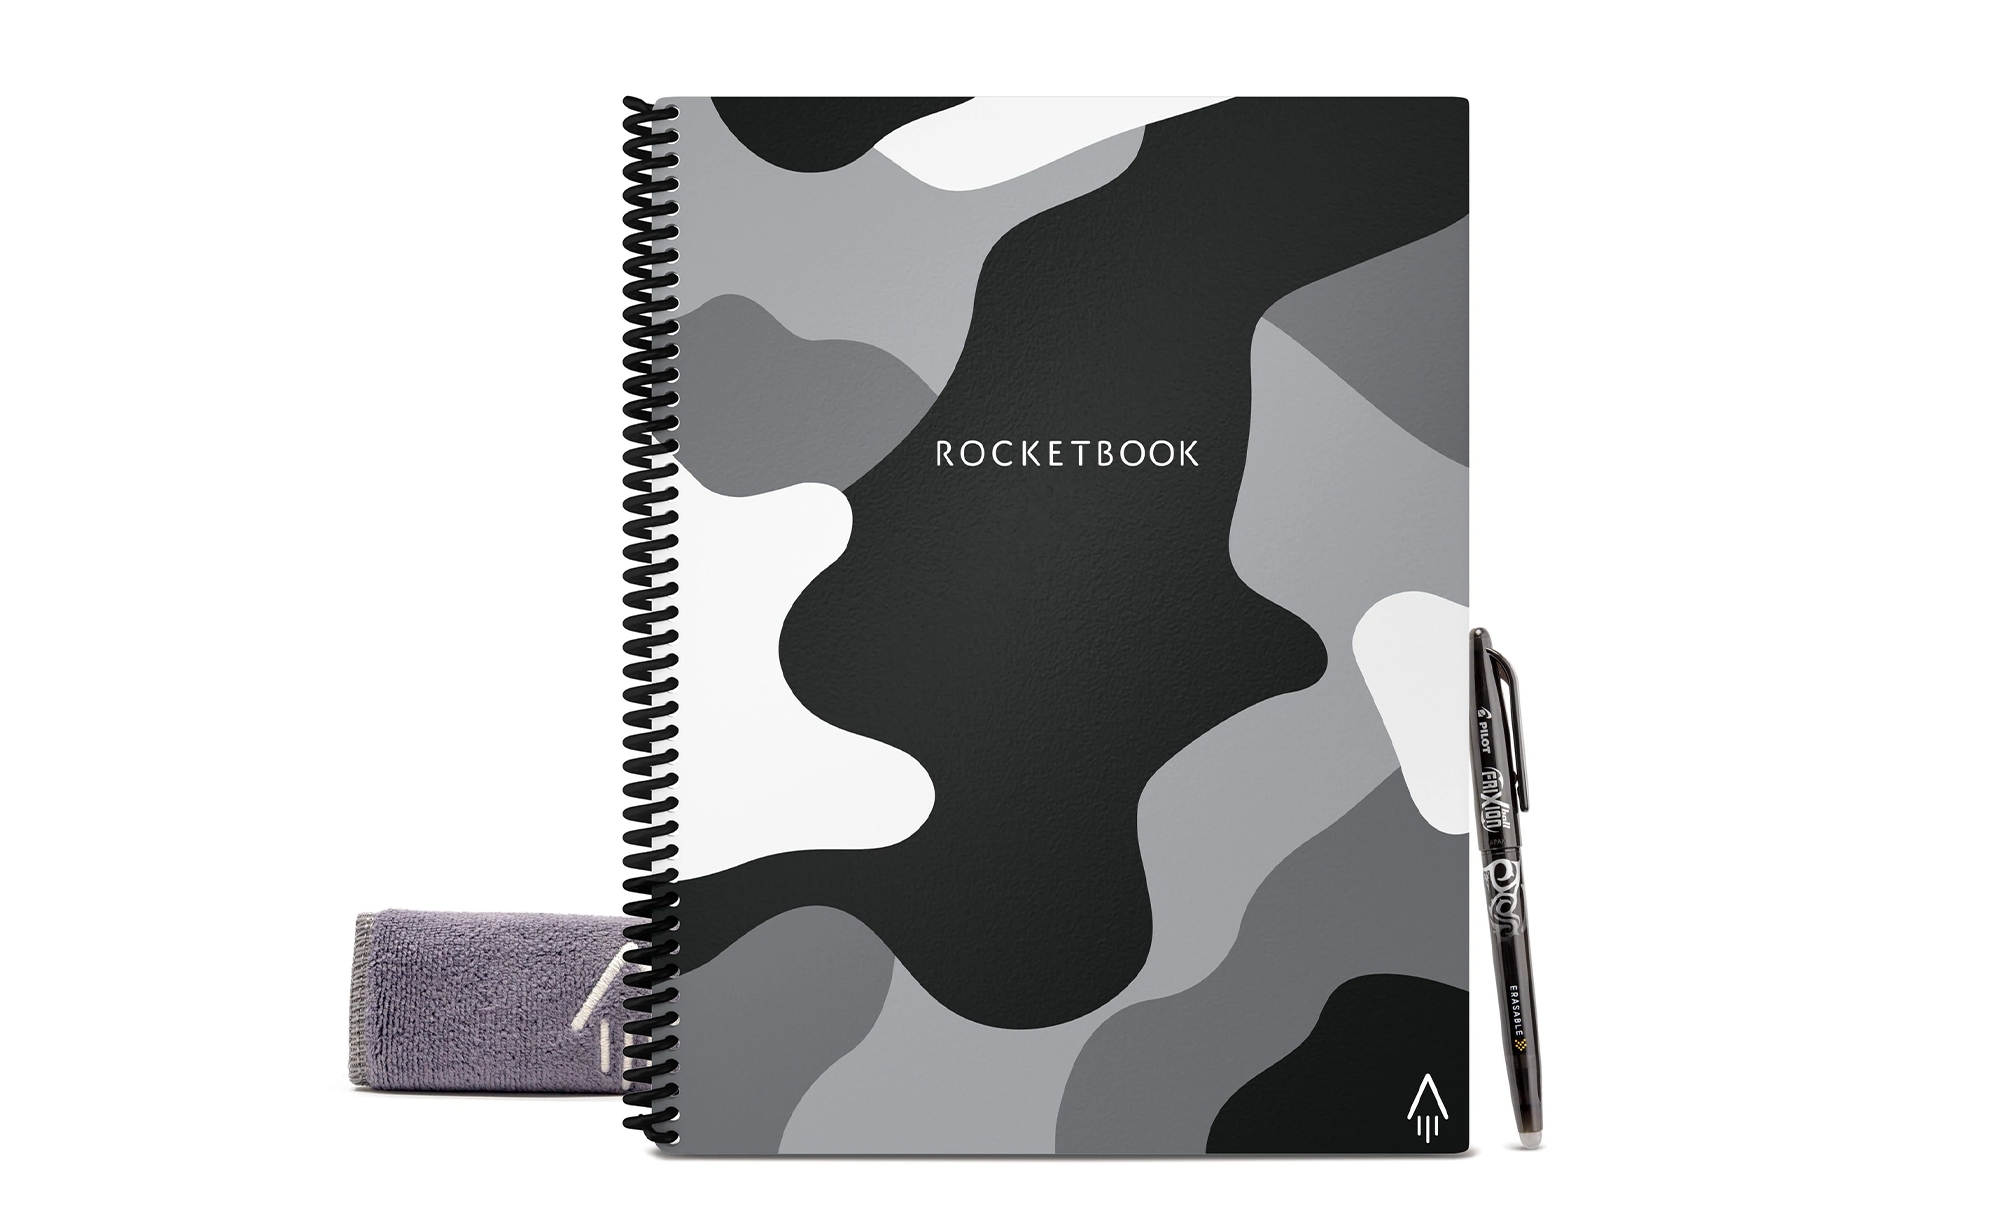 Rocketbook Eco-Friendly reusable notebook | DeviceDaily.com